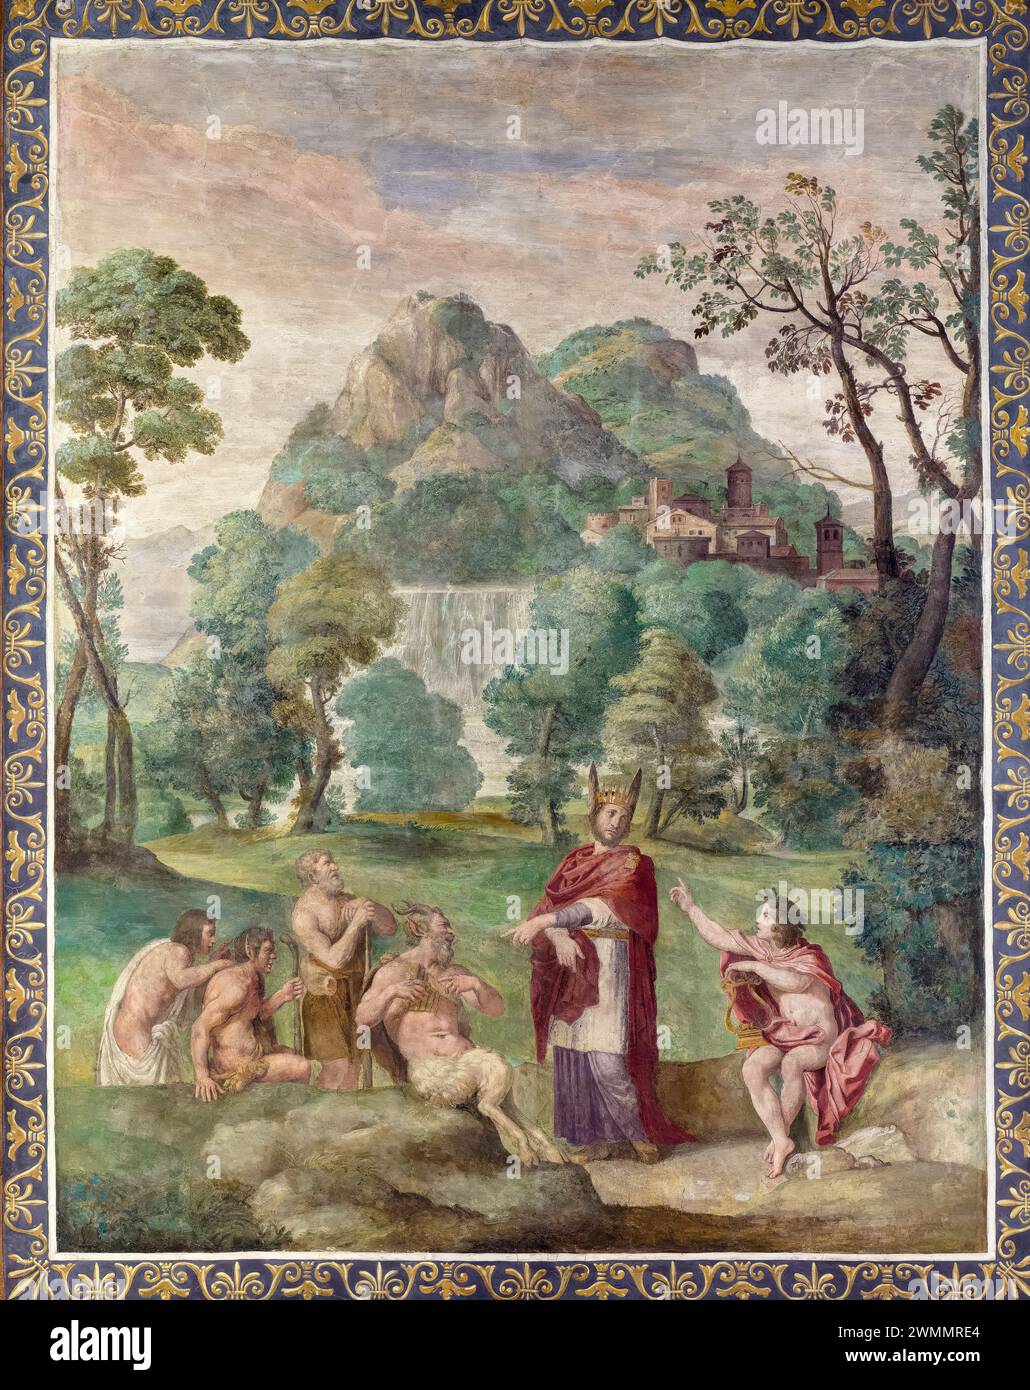 Le jugement de la fresque Midas peinture transférée sur toile et montée à bord par Domenico Zampieri appelé Domenichino et atelier, 1616-1618 Banque D'Images